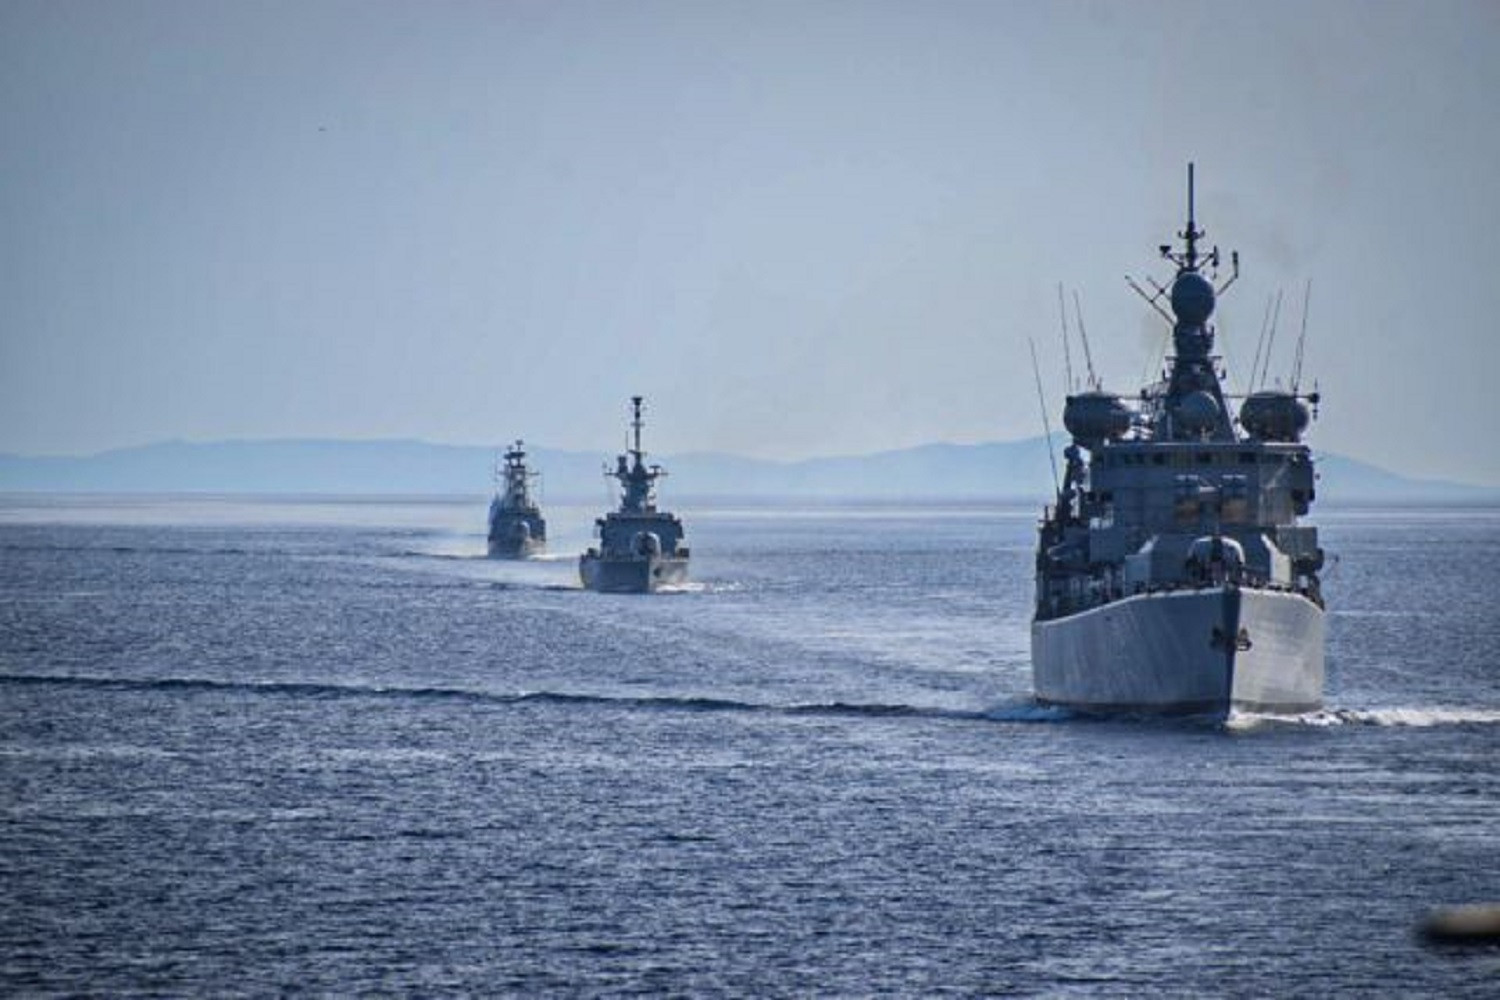 Προκαλούν ξανά οι Τούρκοι με NAVTEX νότια της Κρήτης – Ποιο το σύνθημα που δυναμιτίζει